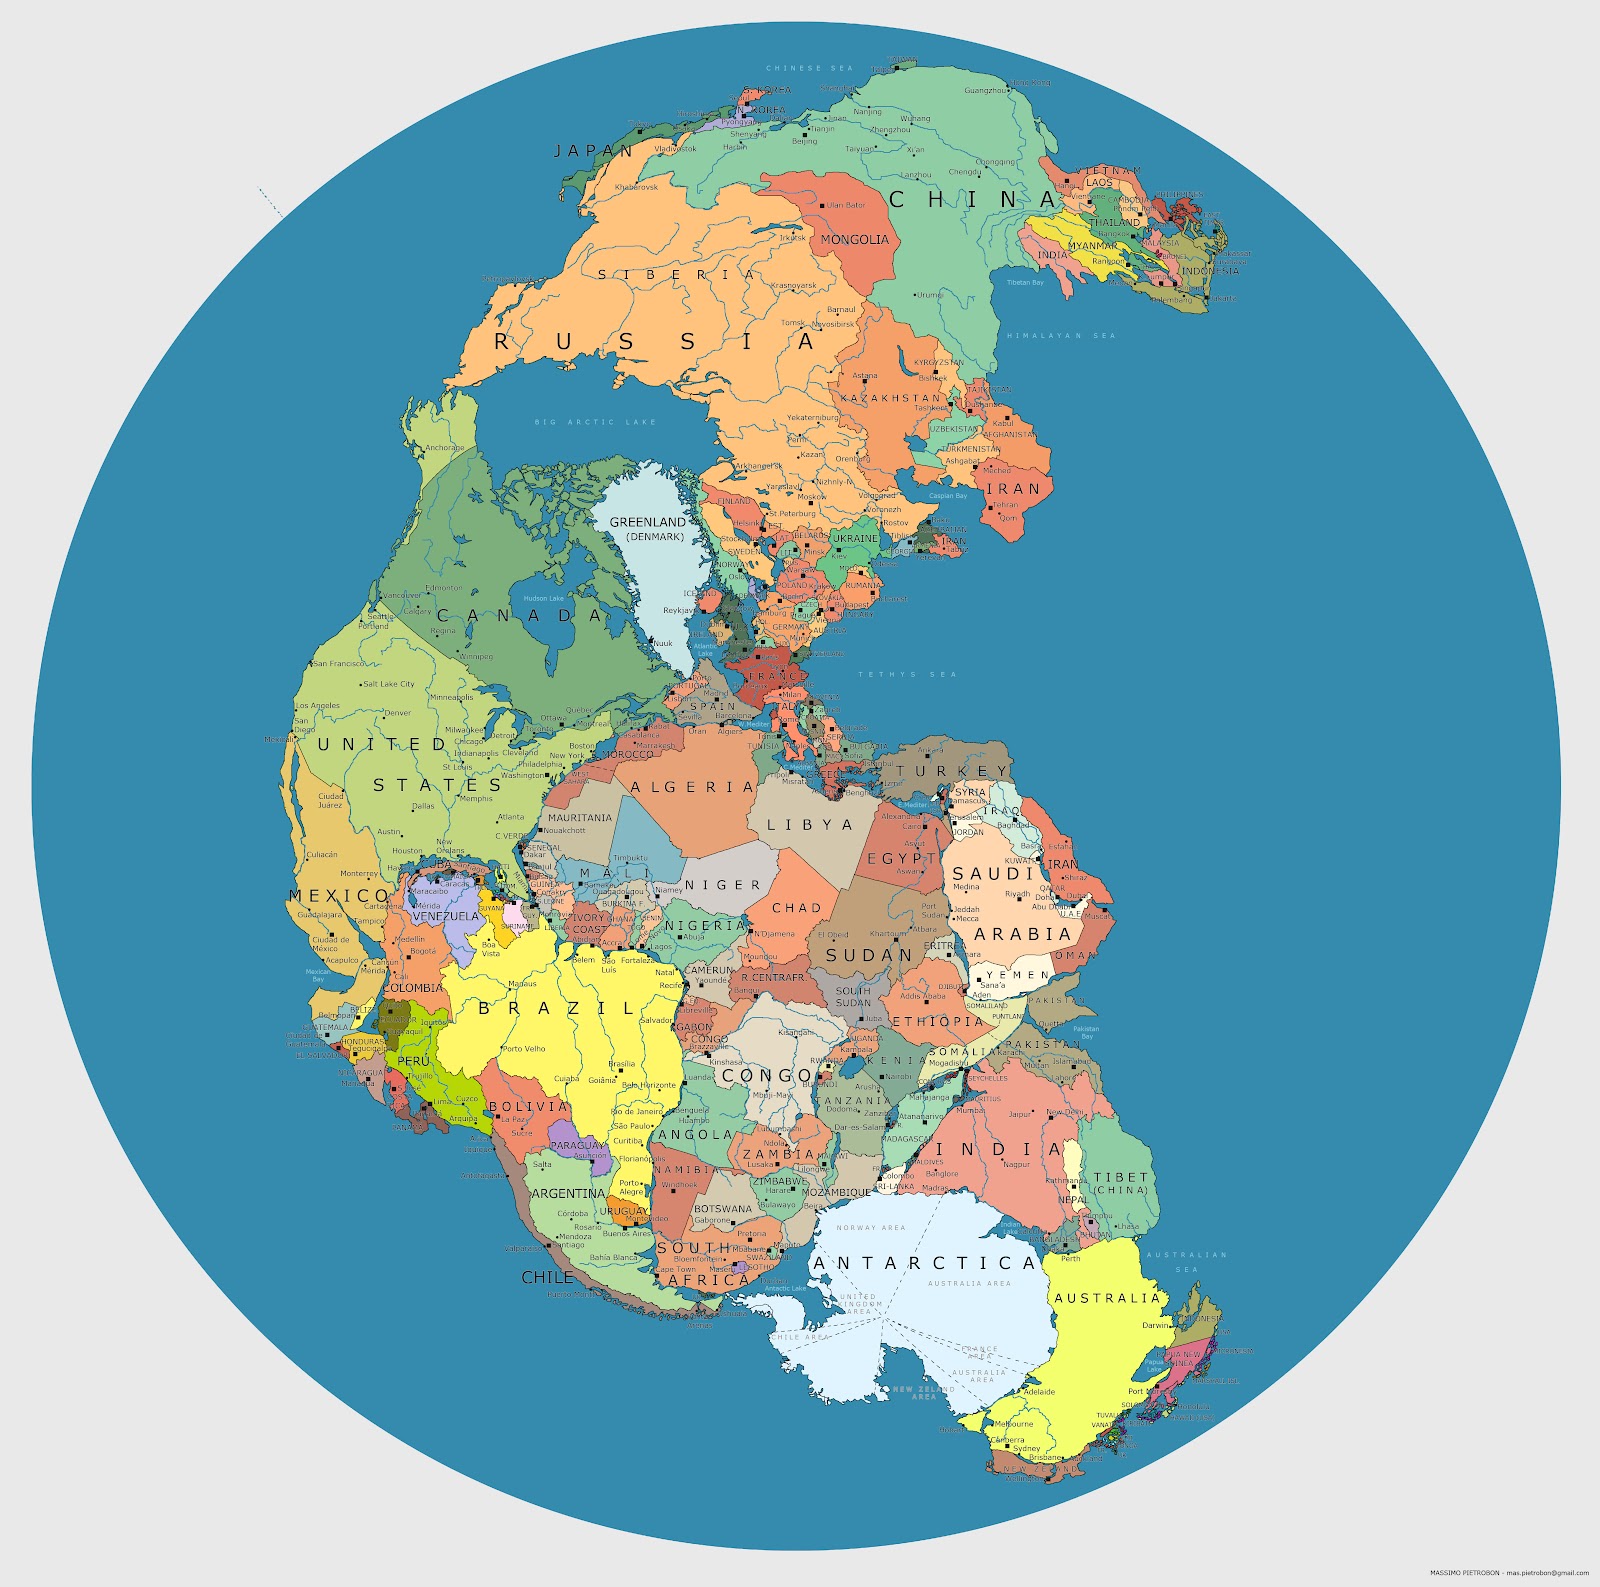 Сучасна політична карта світу на континенті Пангея